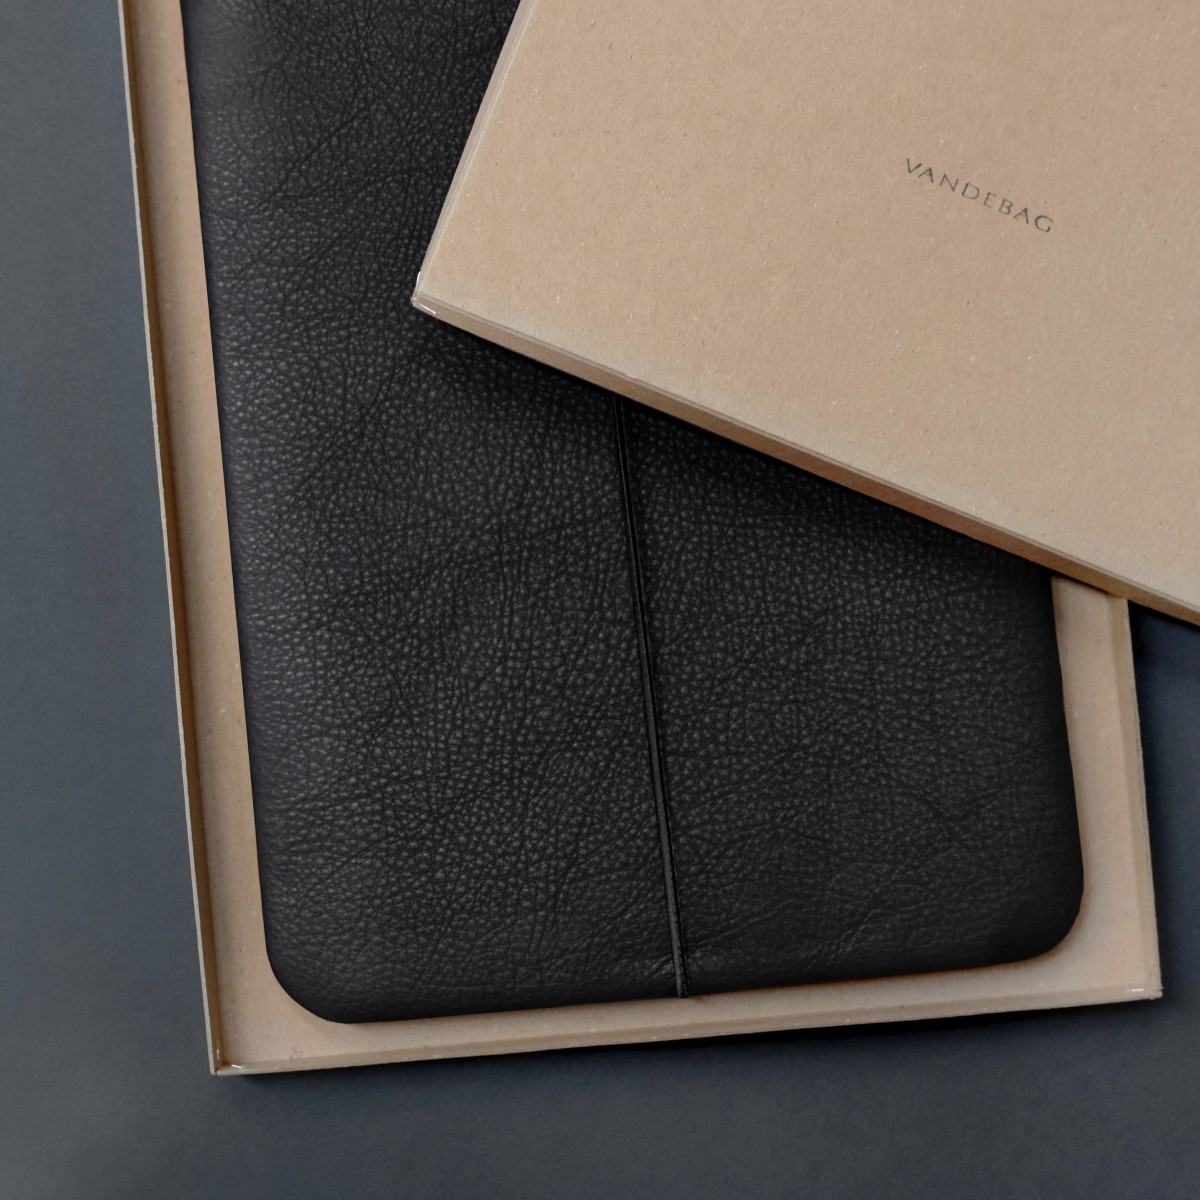 MacBook Hülle aus Leder in schwarz